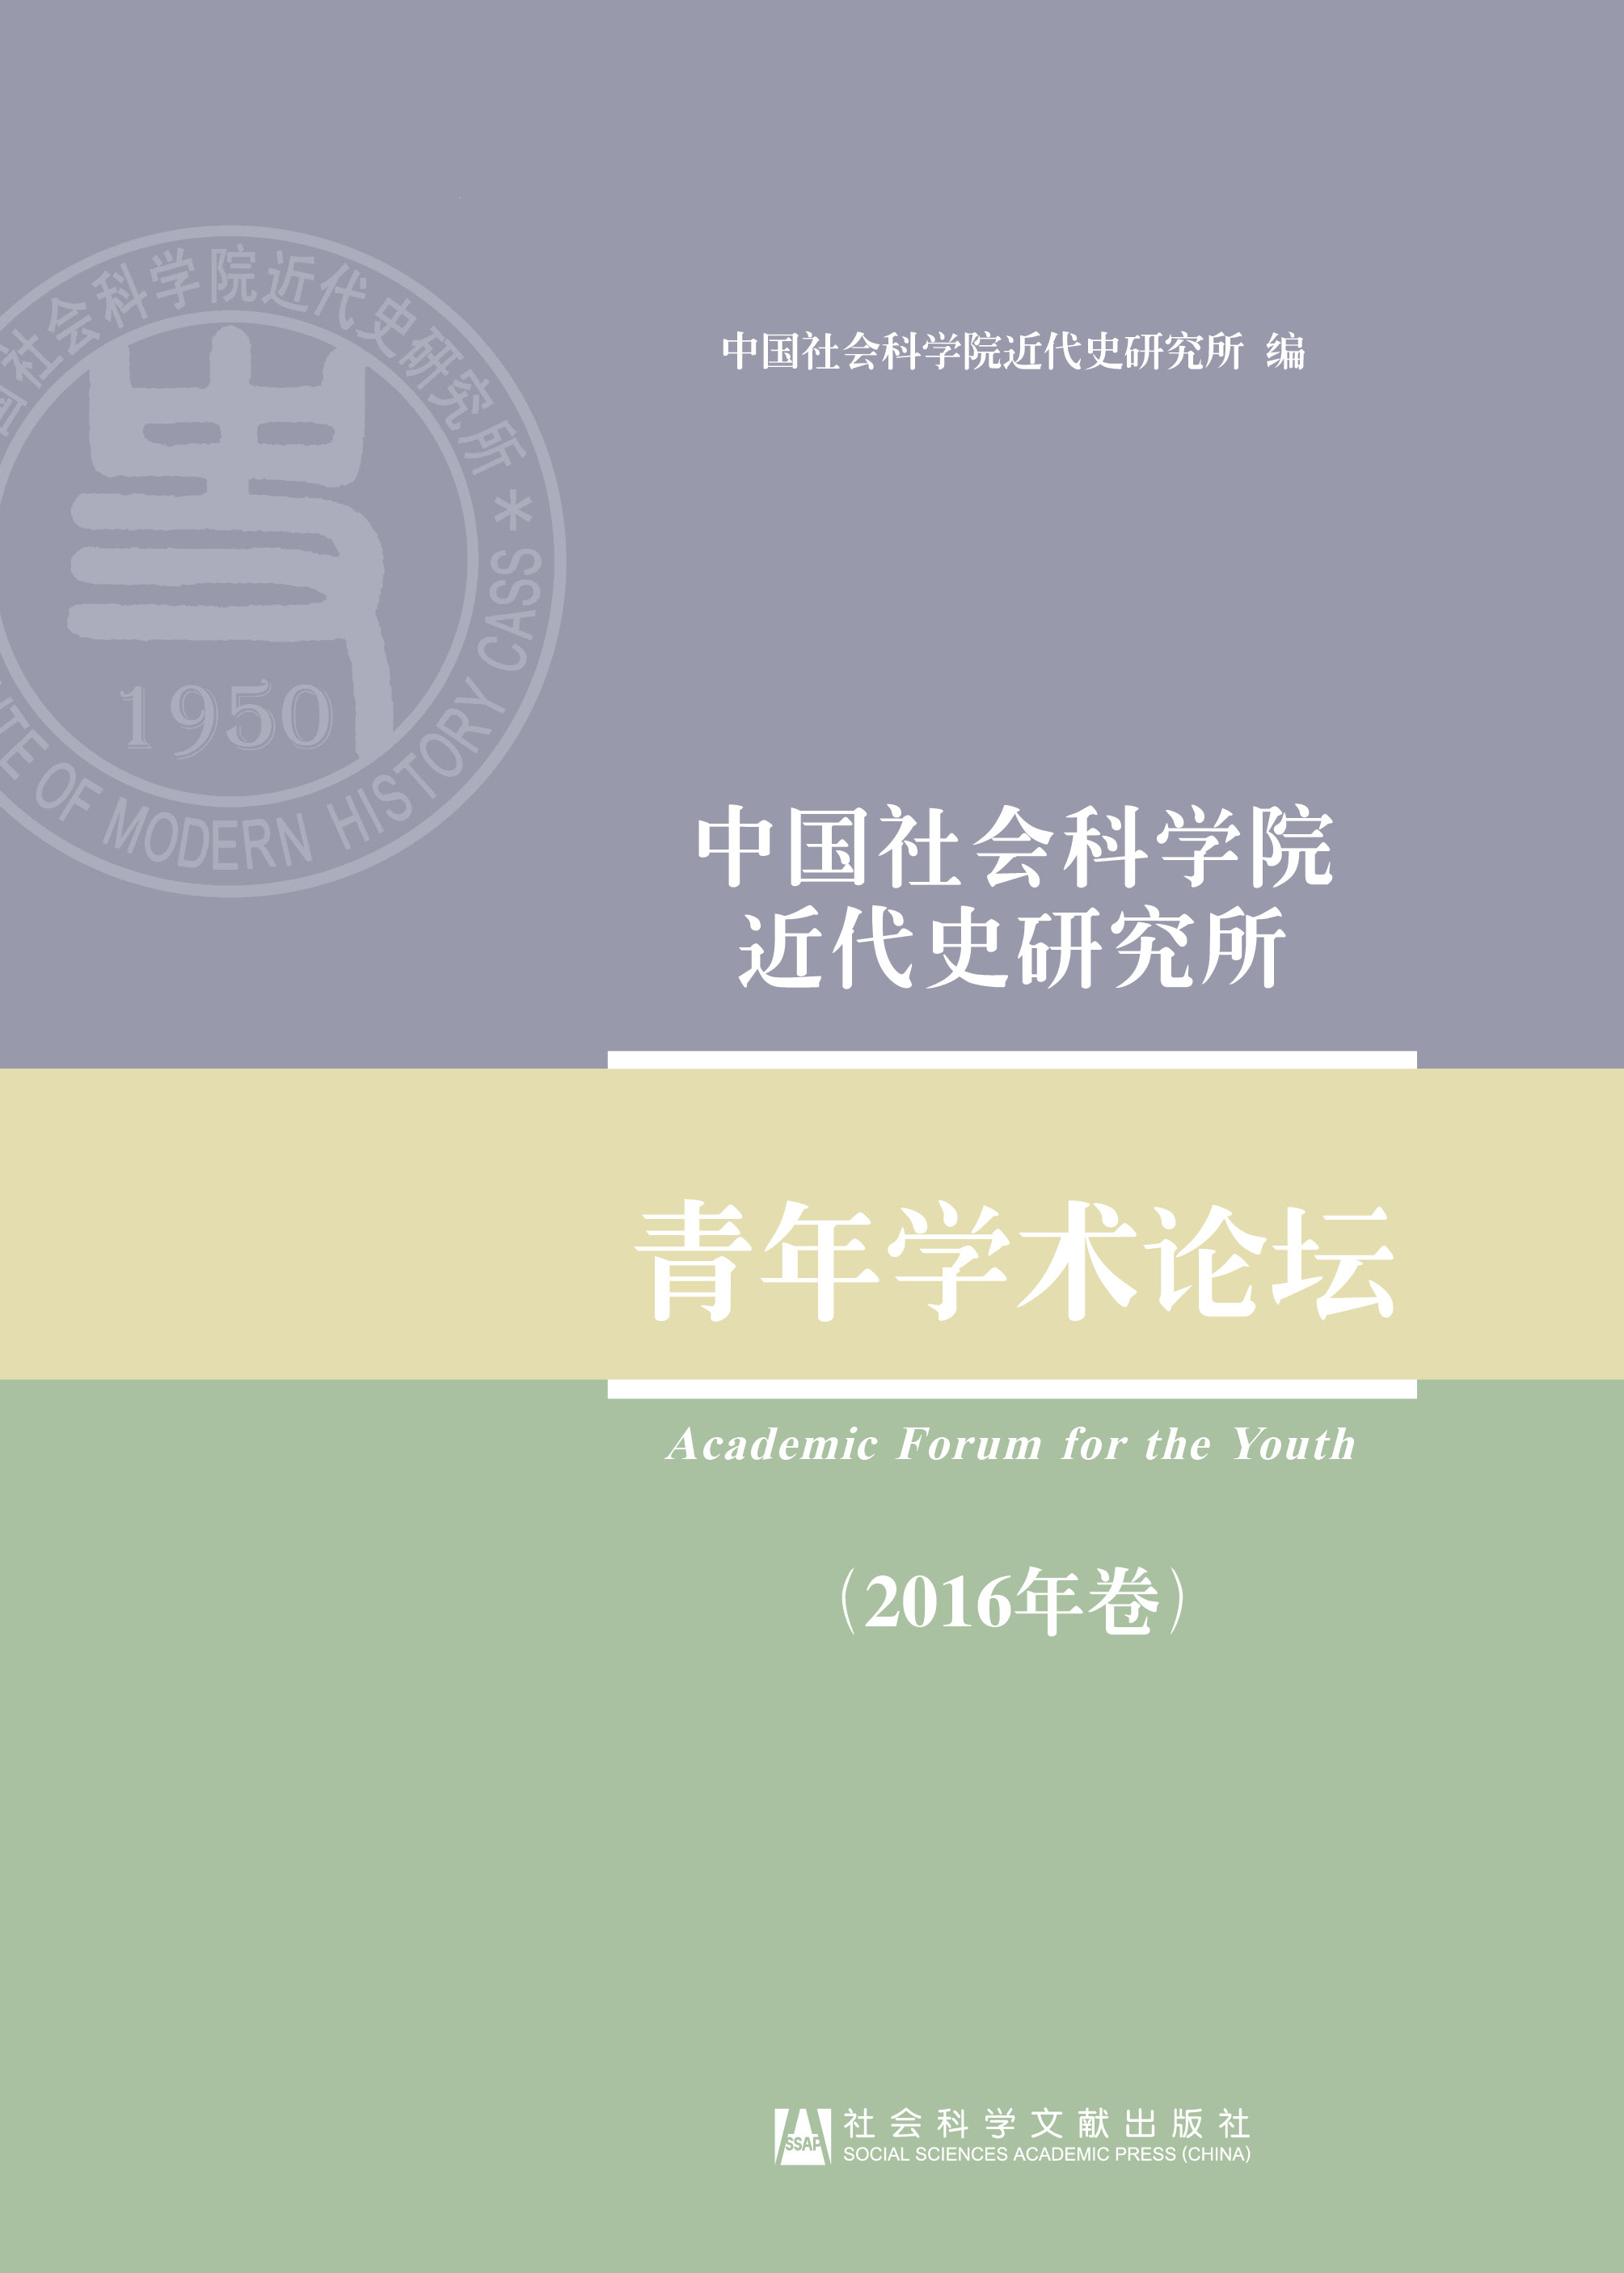 中国社会科学院近代史研究所青年学术论坛（2016年卷） 